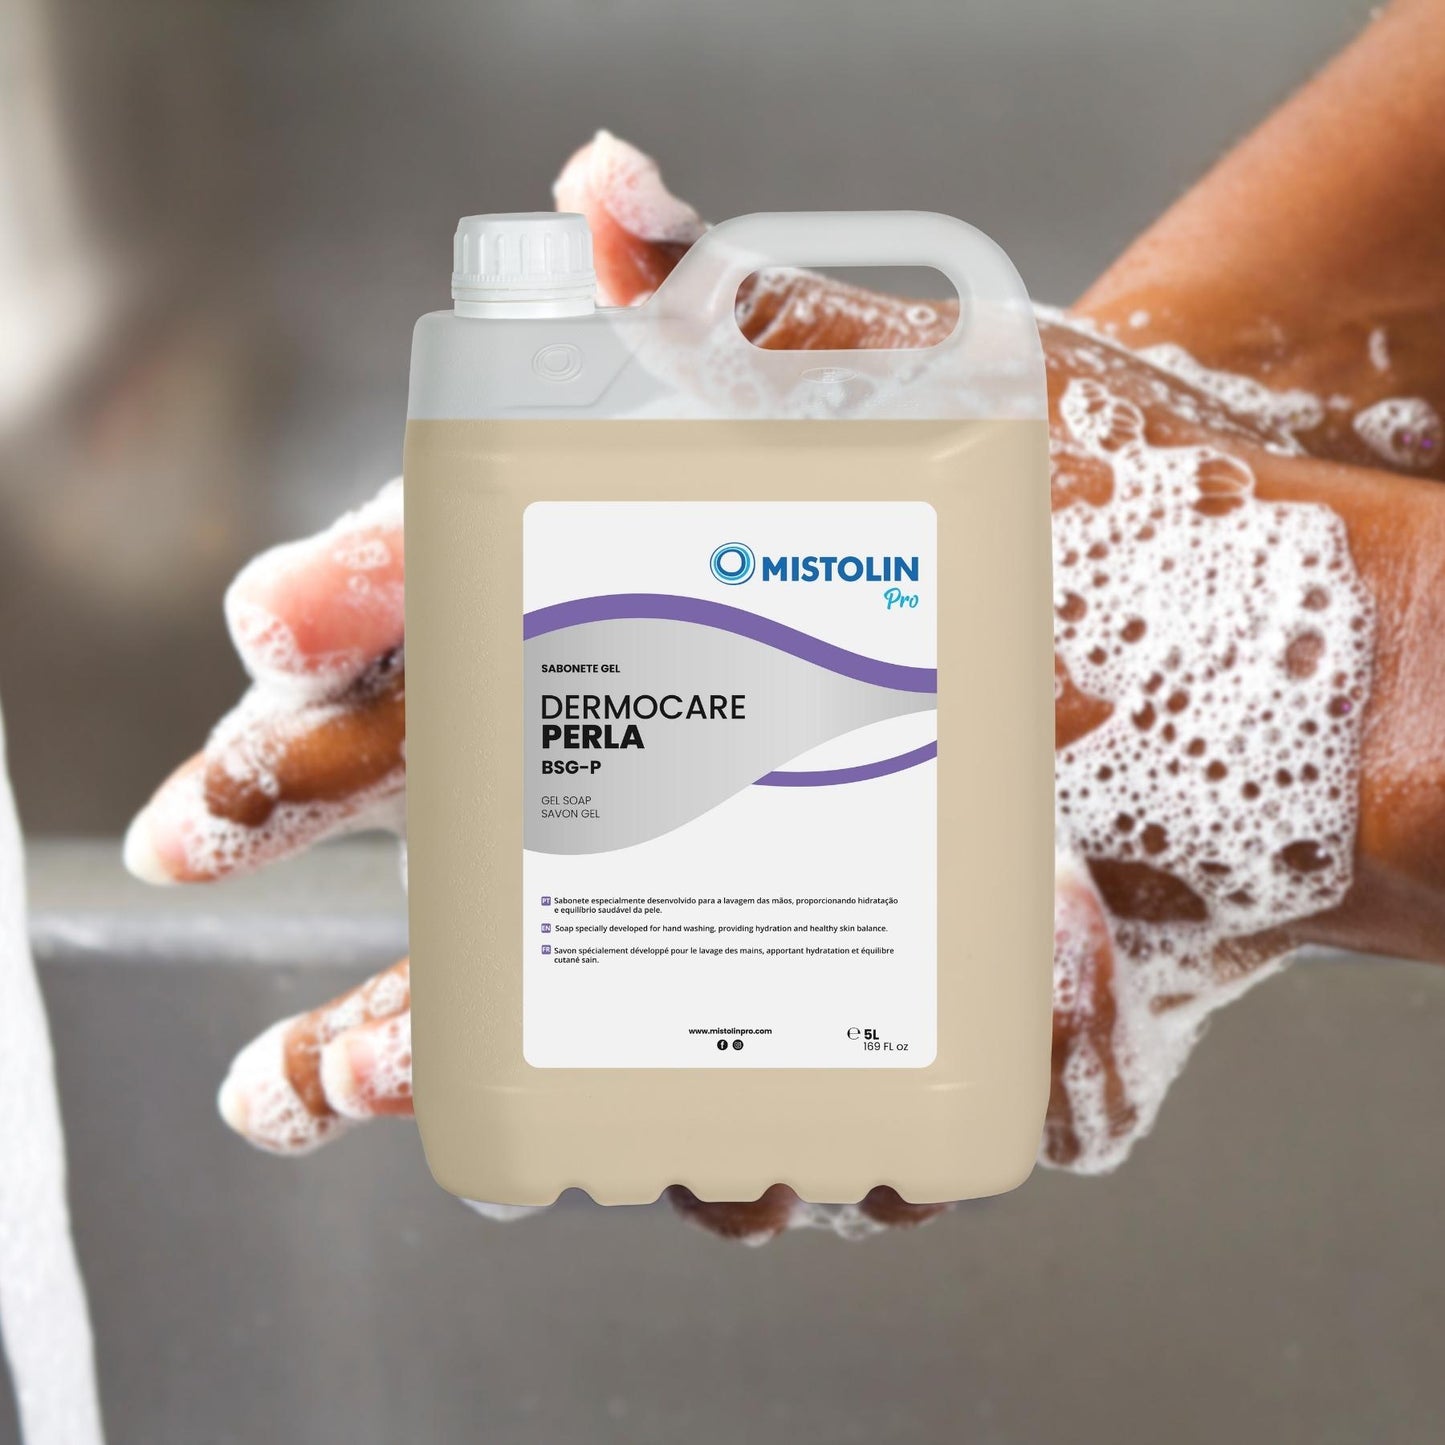 DERMOCARE PERLA BSG-P SABONETE GEL 5LT, é um sabonete especialmente desenvolvido para a lavagem das mãos, proporcionando hidratação e equilíbrio saudável da pele.